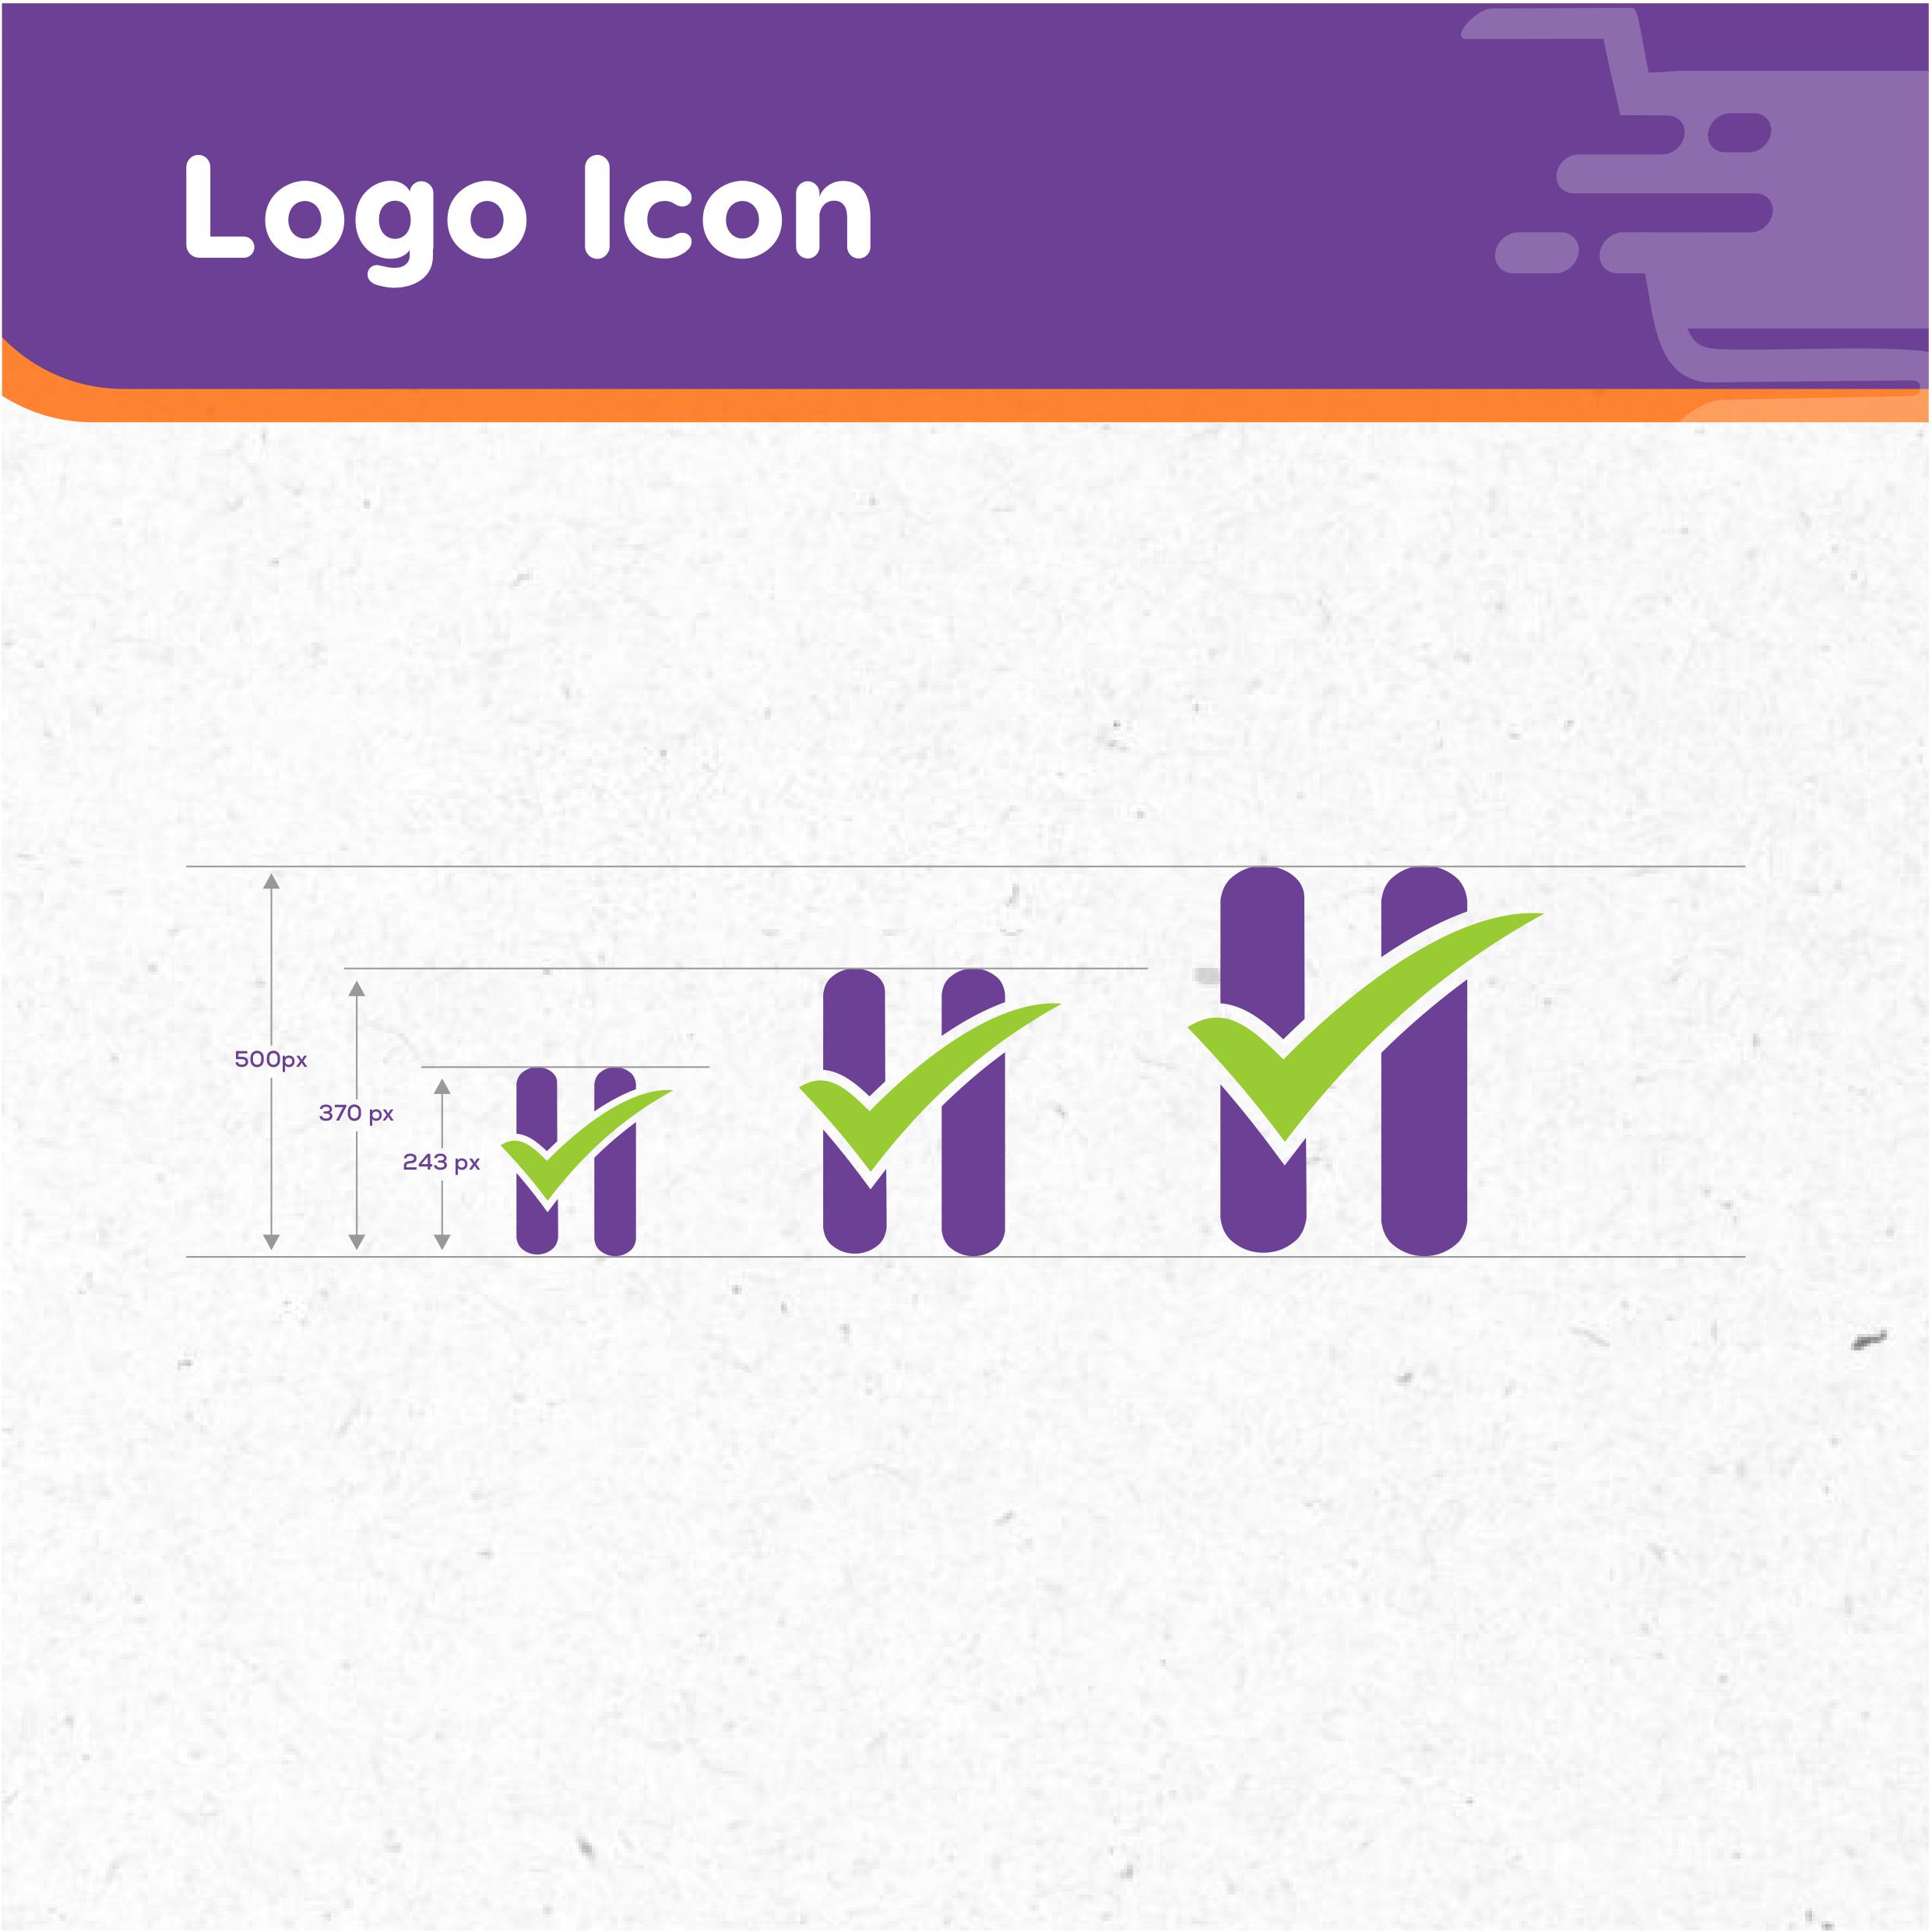 Brand Logo Icon